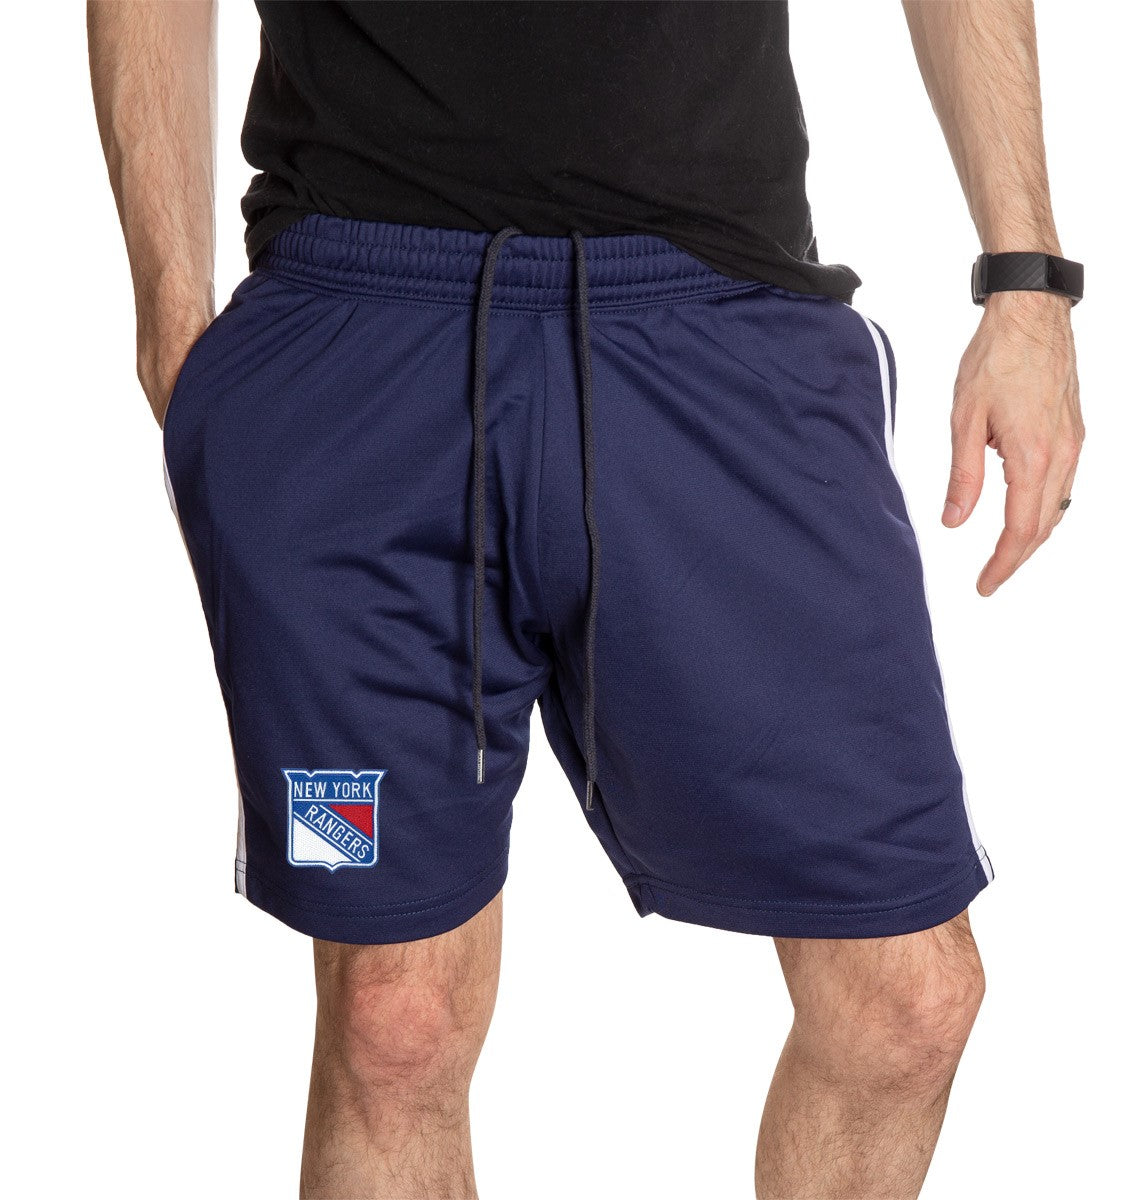 New York Rangers Two-Stripe Shorts for Men